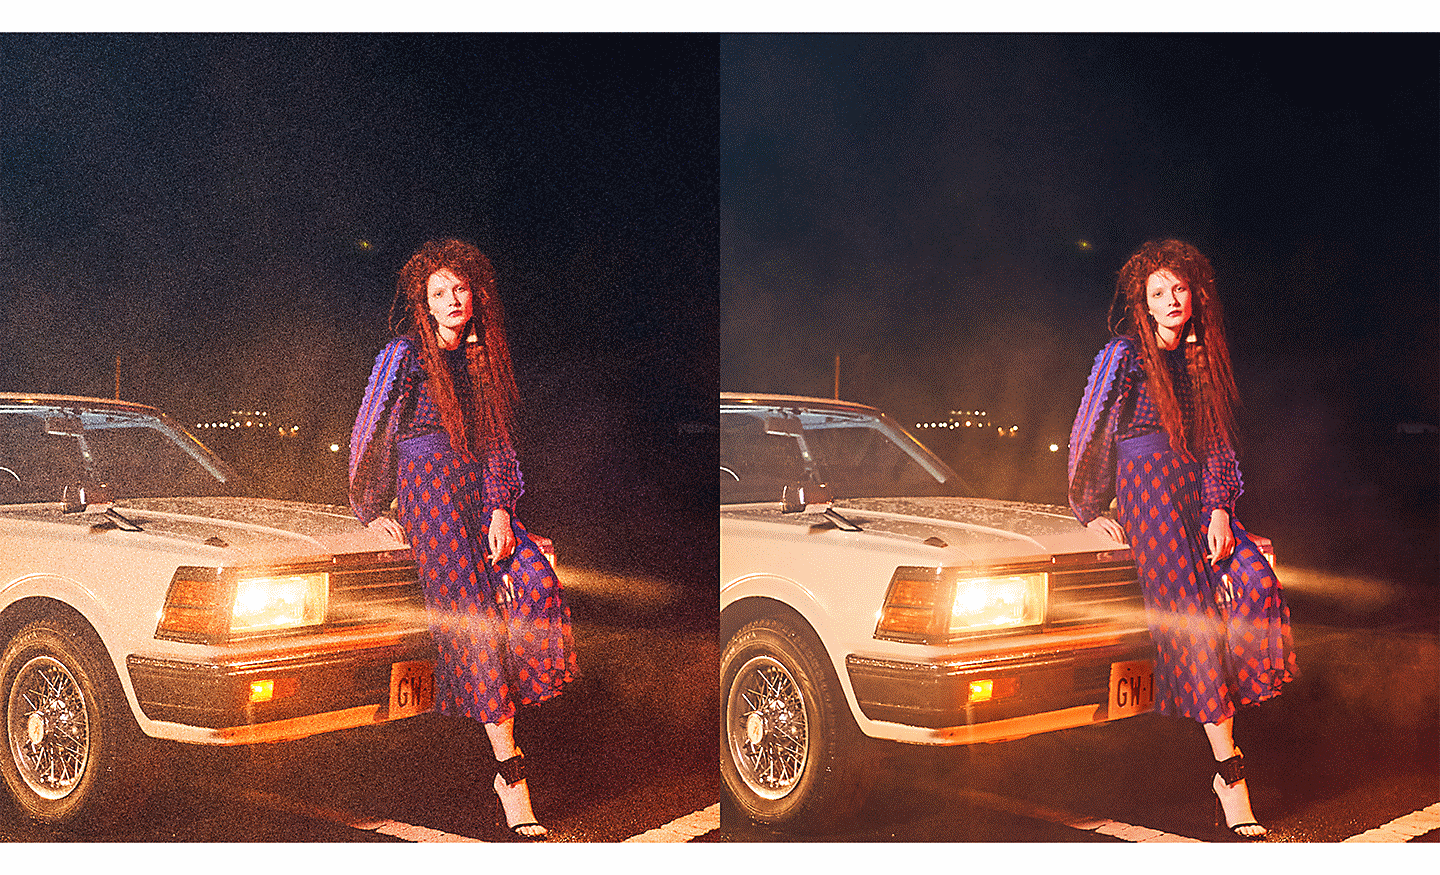 Hai hình ảnh chụp một người phụ nữ đang dựa vào ô tô, một hình ít nhiễu hơn hình kia.